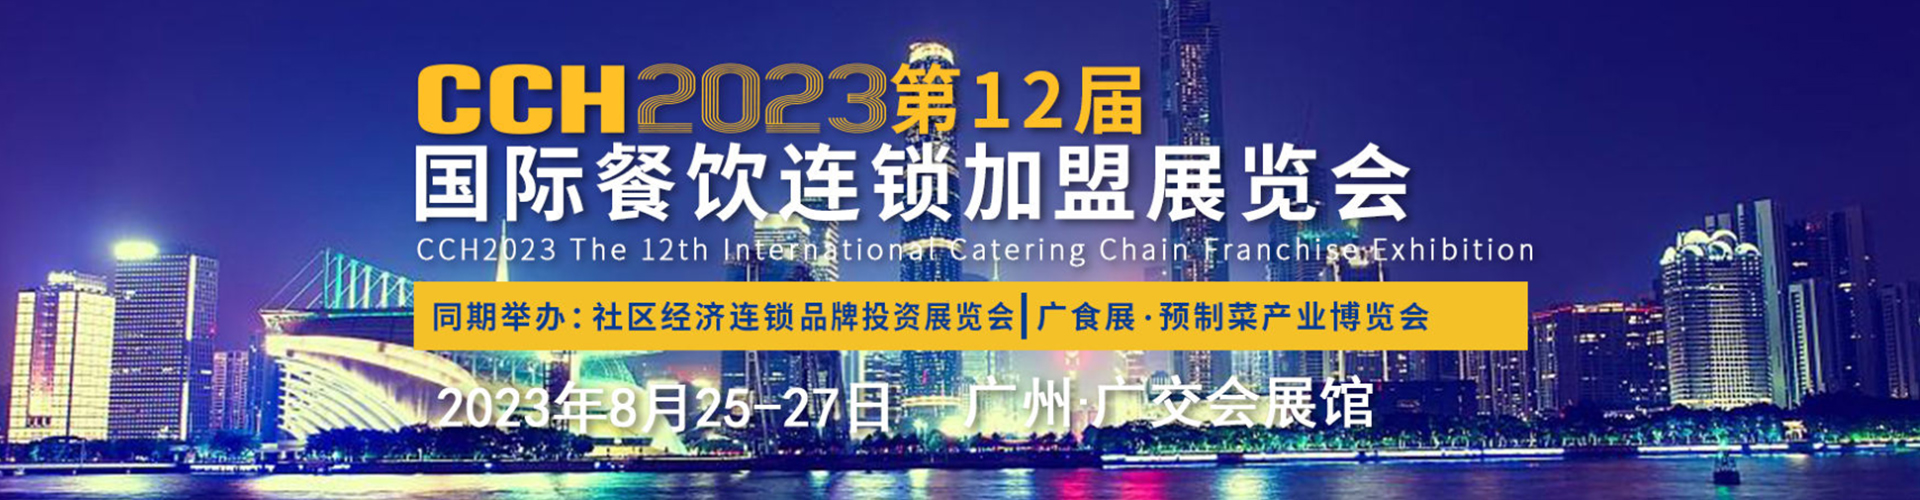 CCH2023全球连锁创业周-国际餐饮连锁加盟展览会